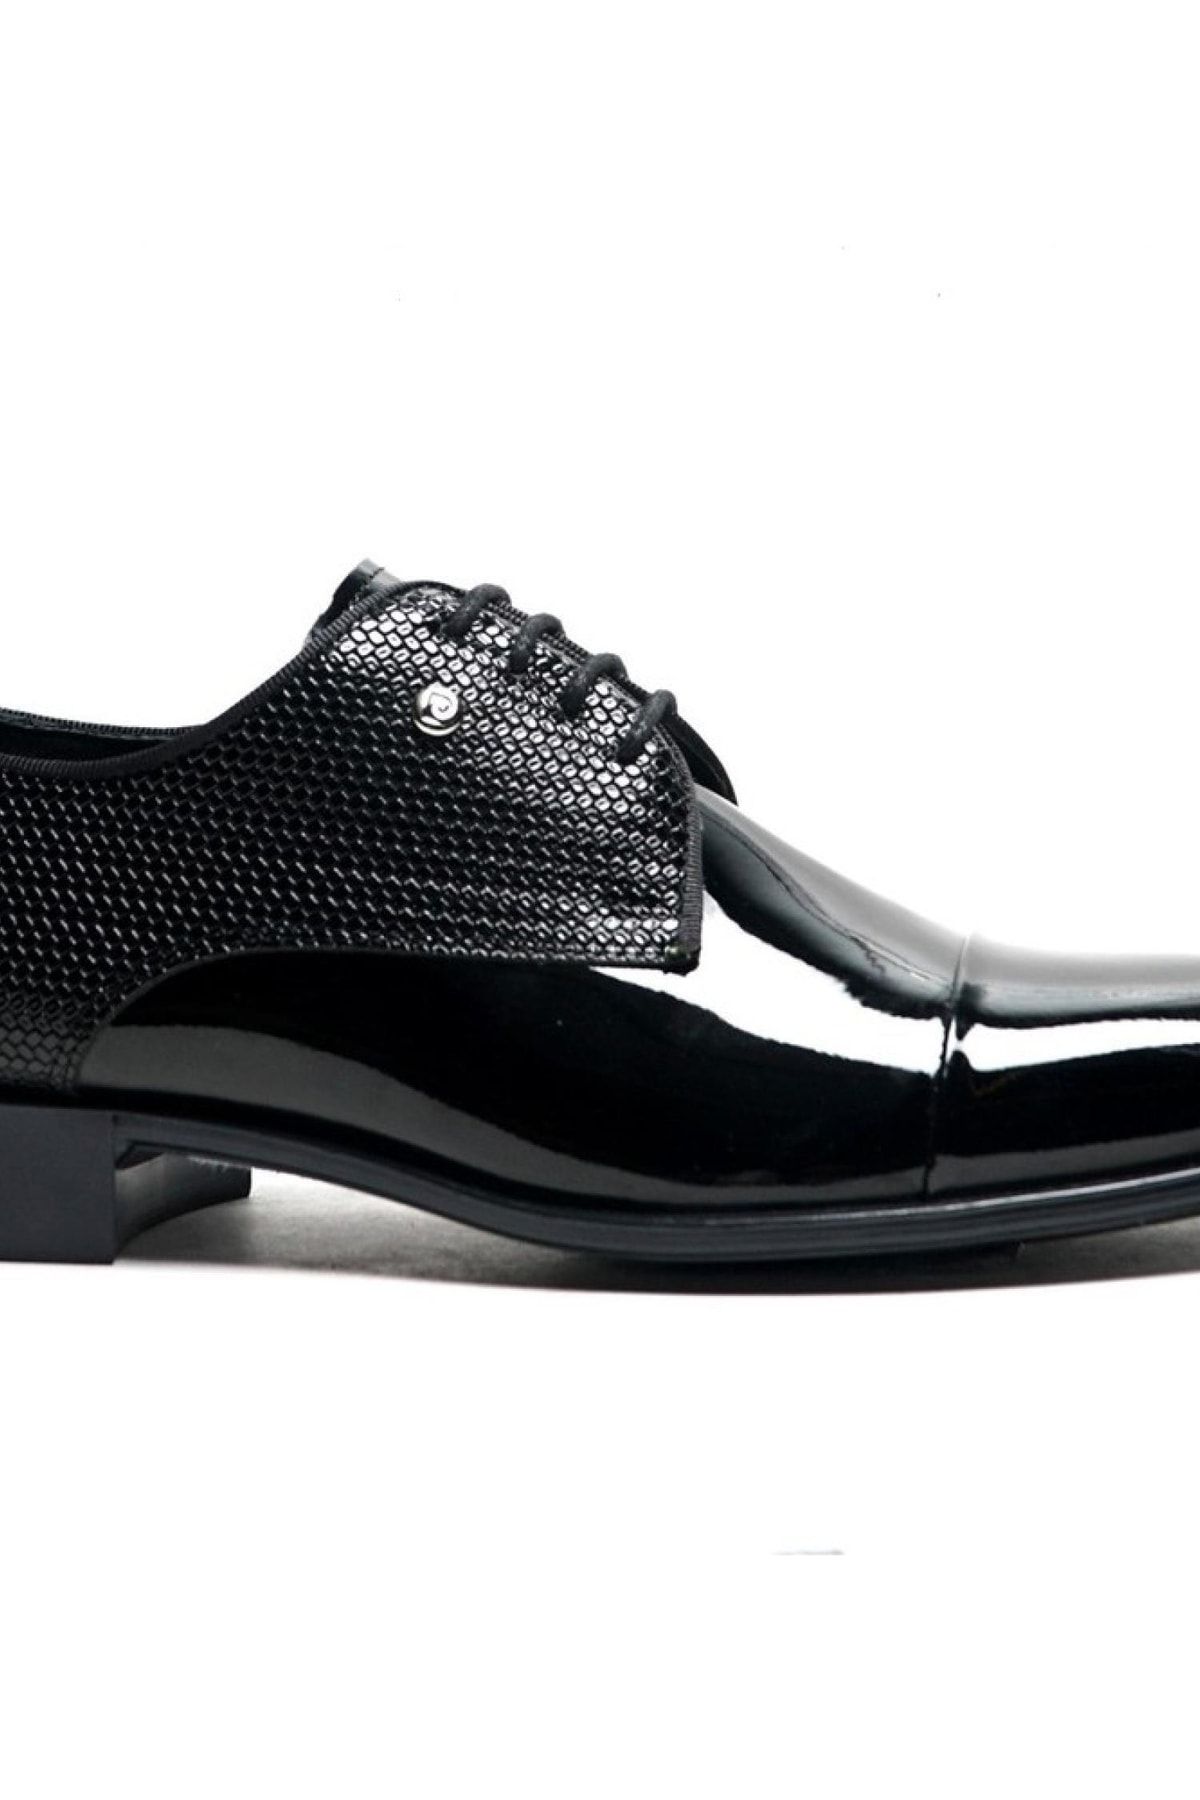 Pierre Cardin 7027-22y Erkek Klasik Ayakkabı